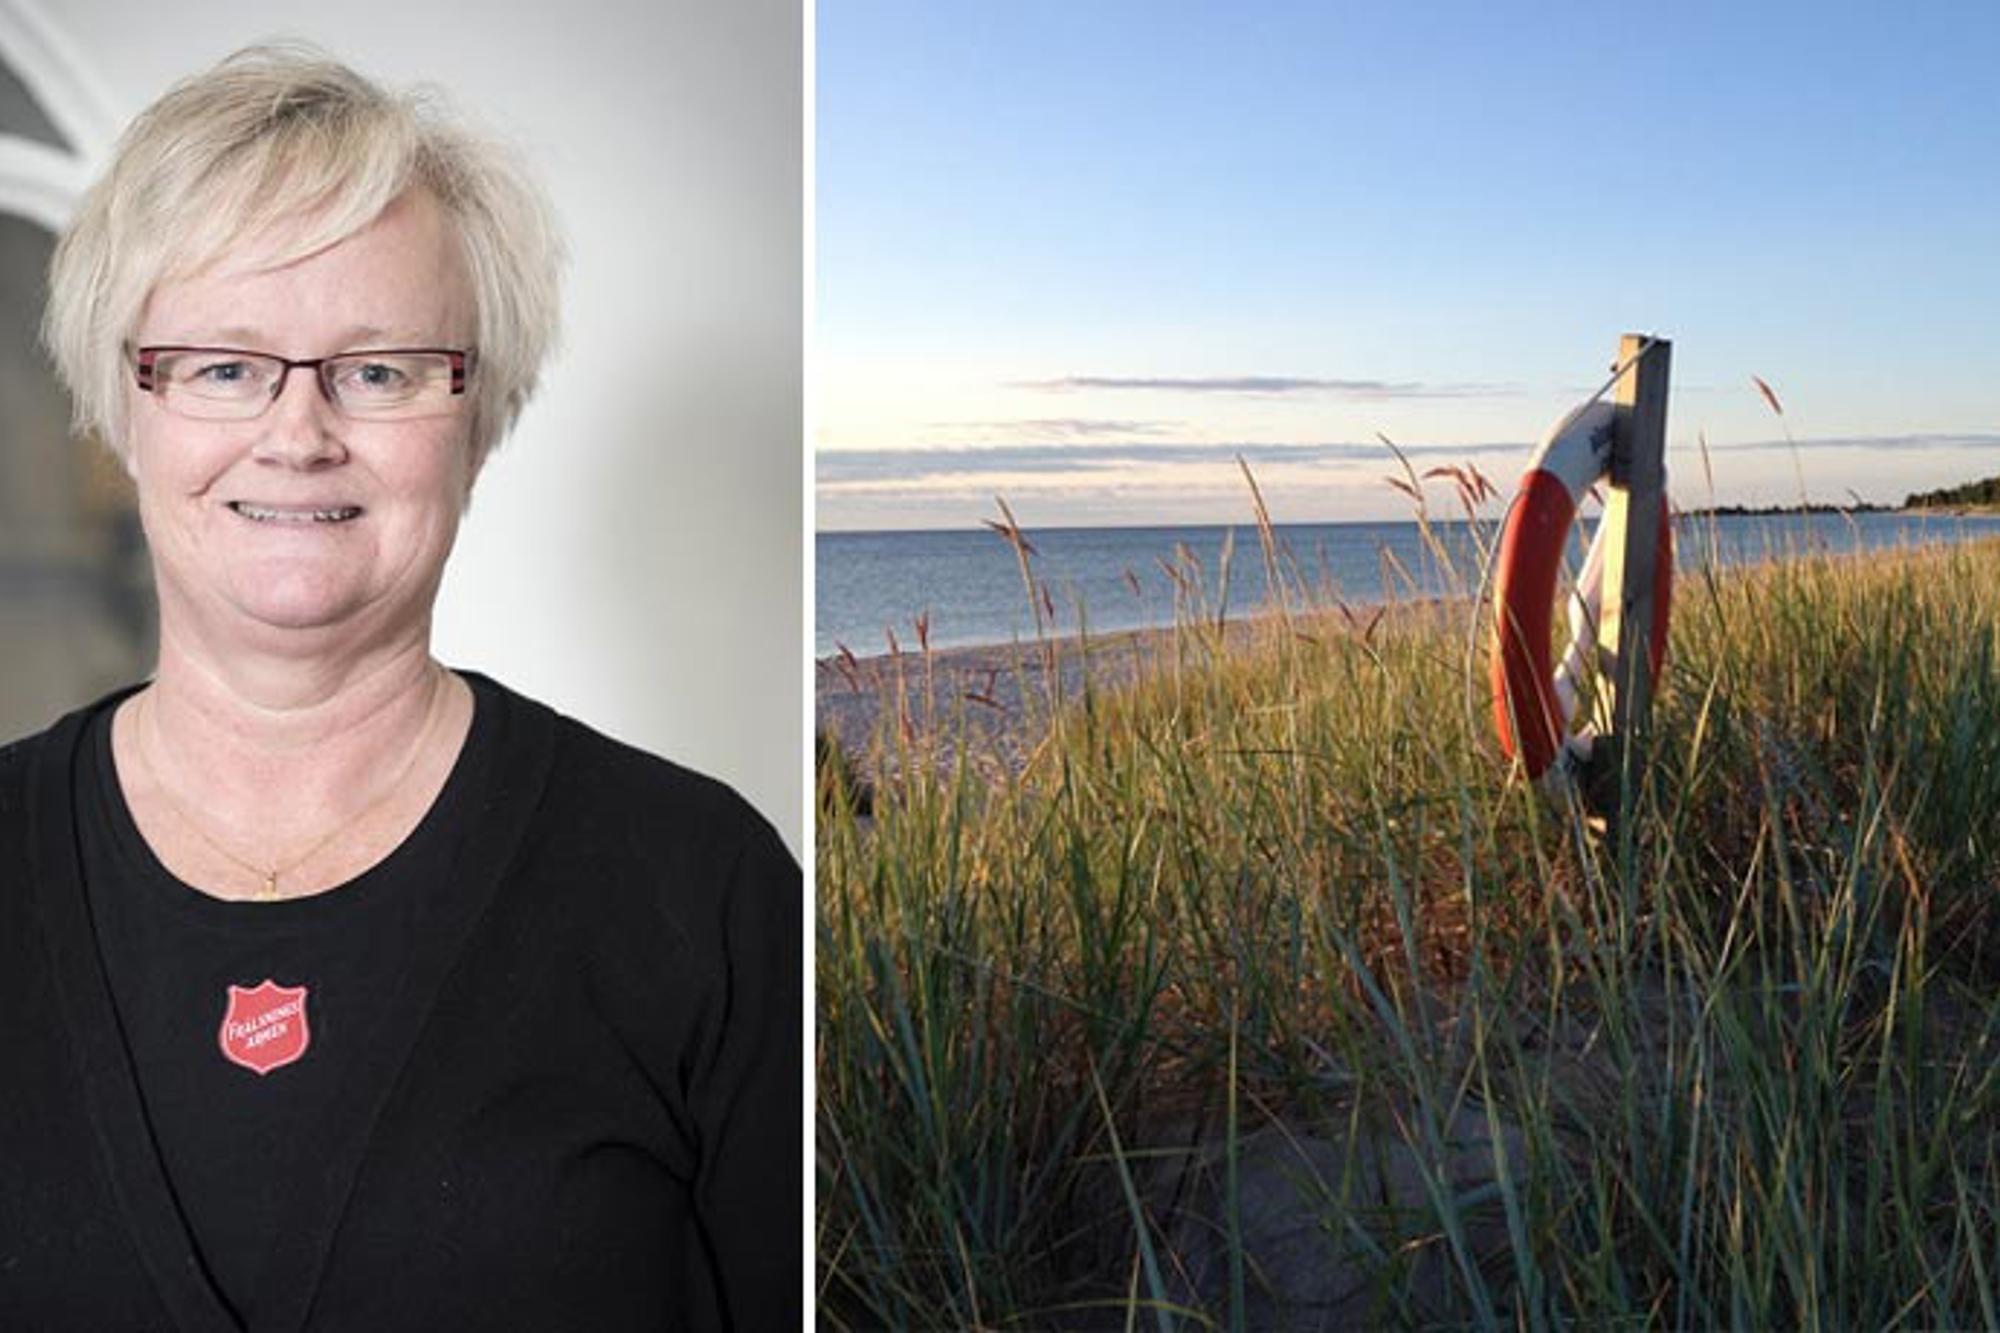 Till vänster: Porträttbild av Anna-Lena Hjerpe. Till höger: En livboj som hänger på en stång vid en sandstrand.